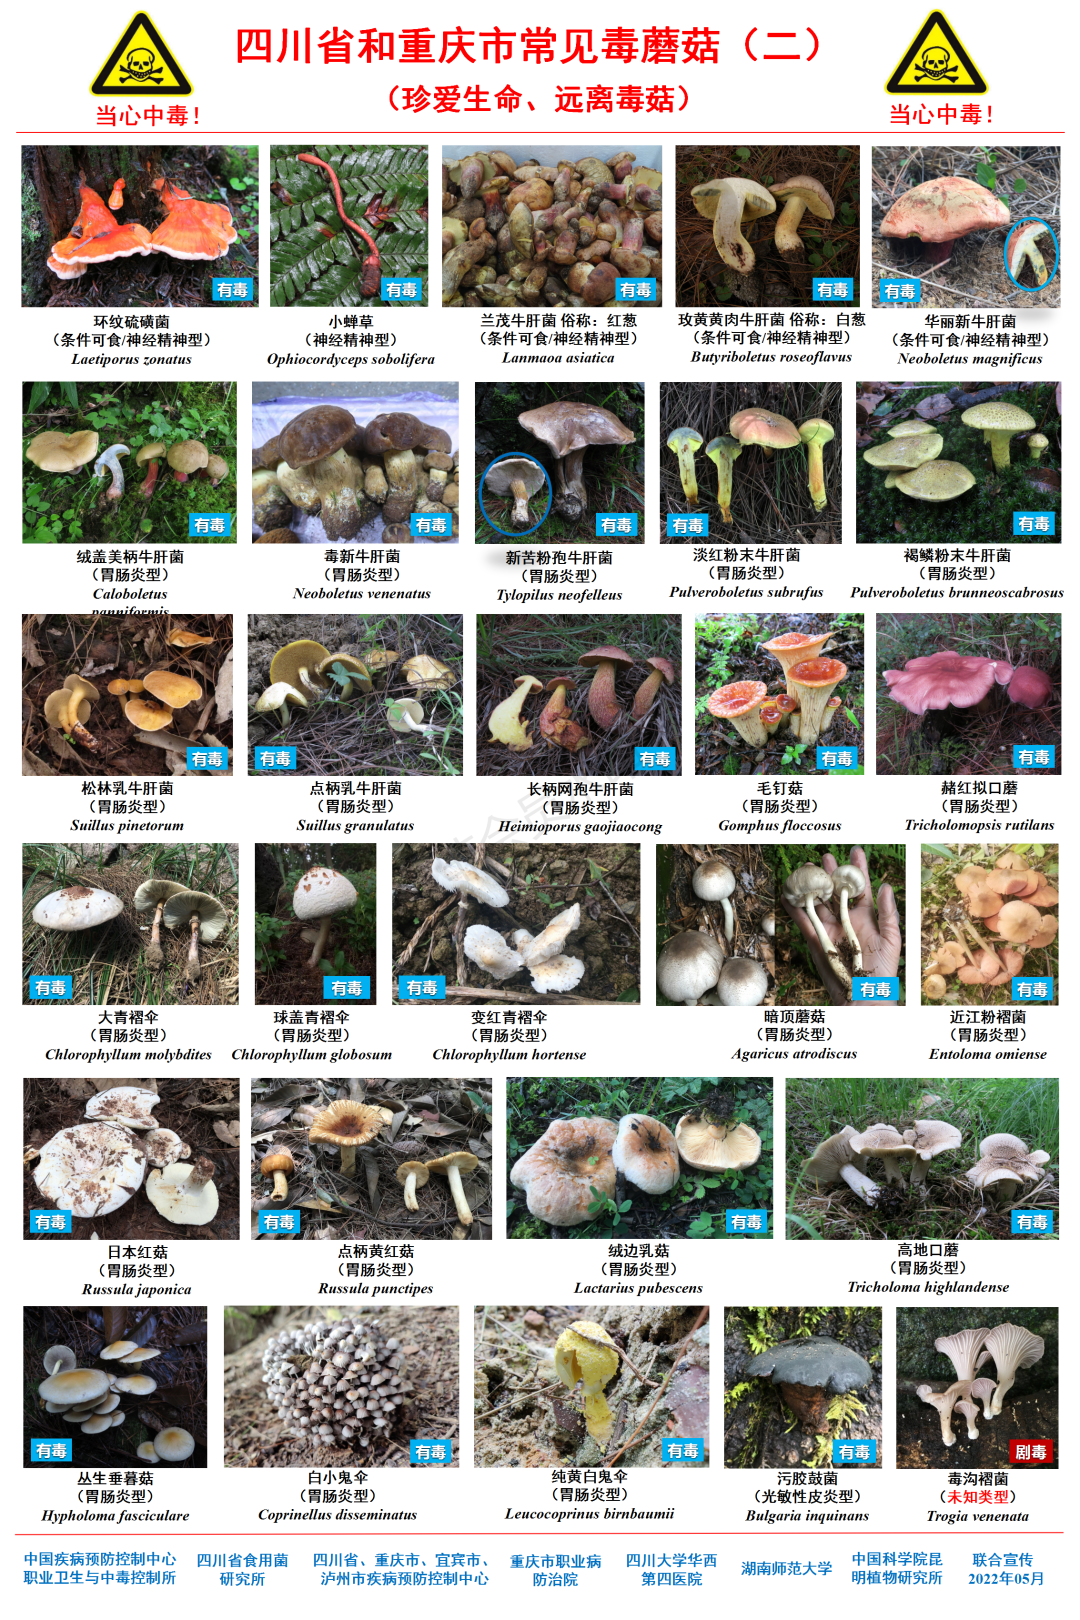 鲜艳的蘑菇才有毒？常见毒蘑菇图鉴来了！请收藏